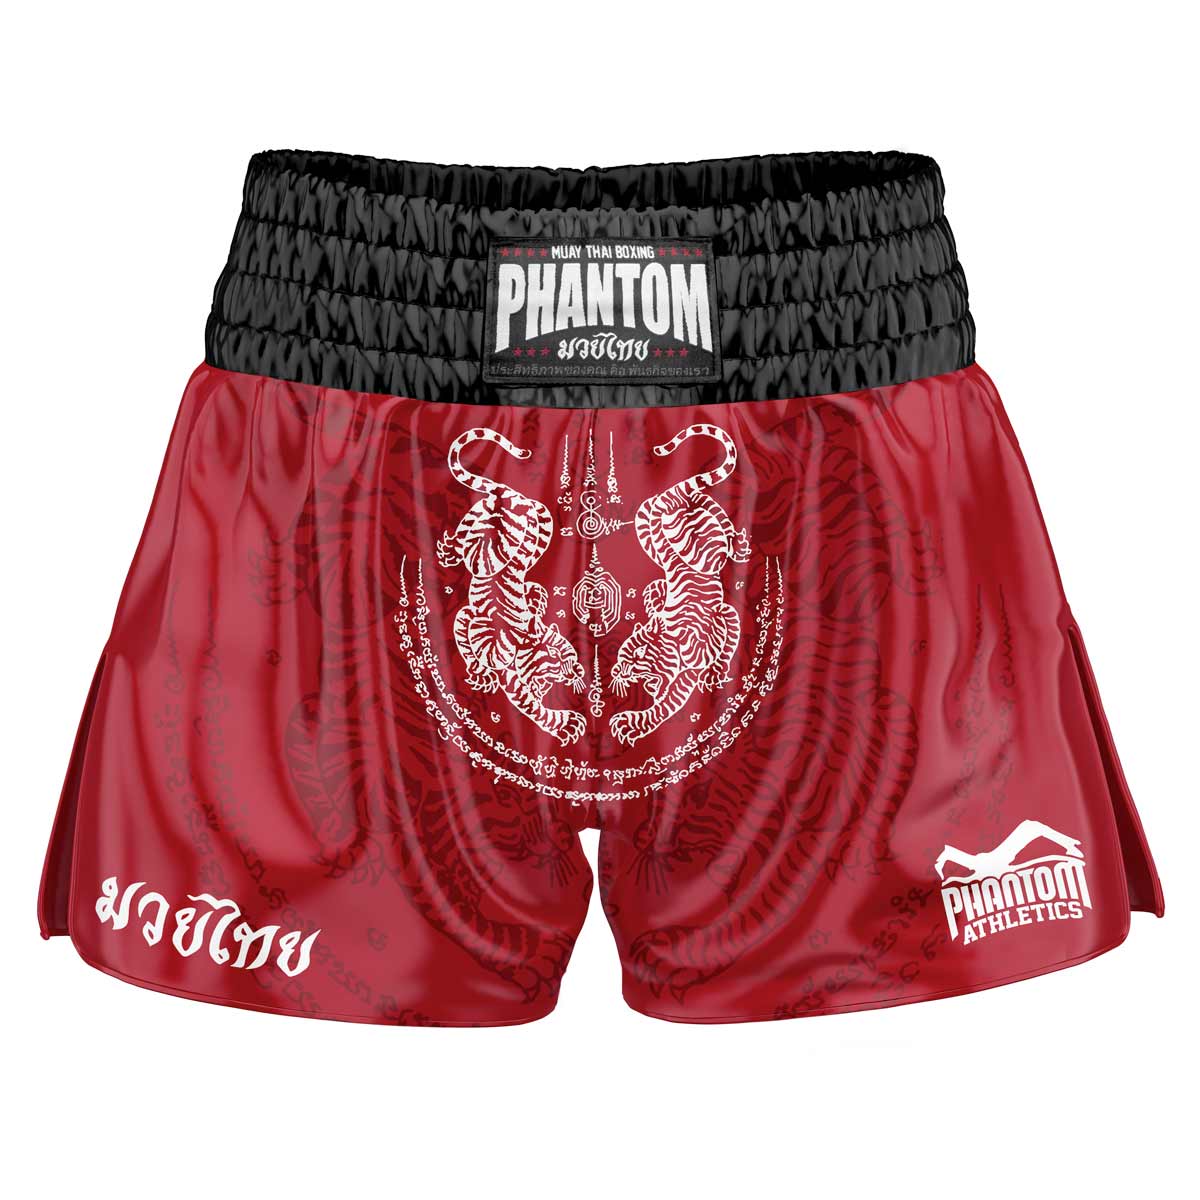 Punased Phantom Muay Thai lühikesed püksid SAK YANT. Traditsioonilise tiigrikujundusega vana kooli satiinkangas annab originaalse Tai tunde. Tavapärases Phantom Athletics kvaliteedis. Ideaalne teie Tai poksi treeninguteks ja võistlusteks.